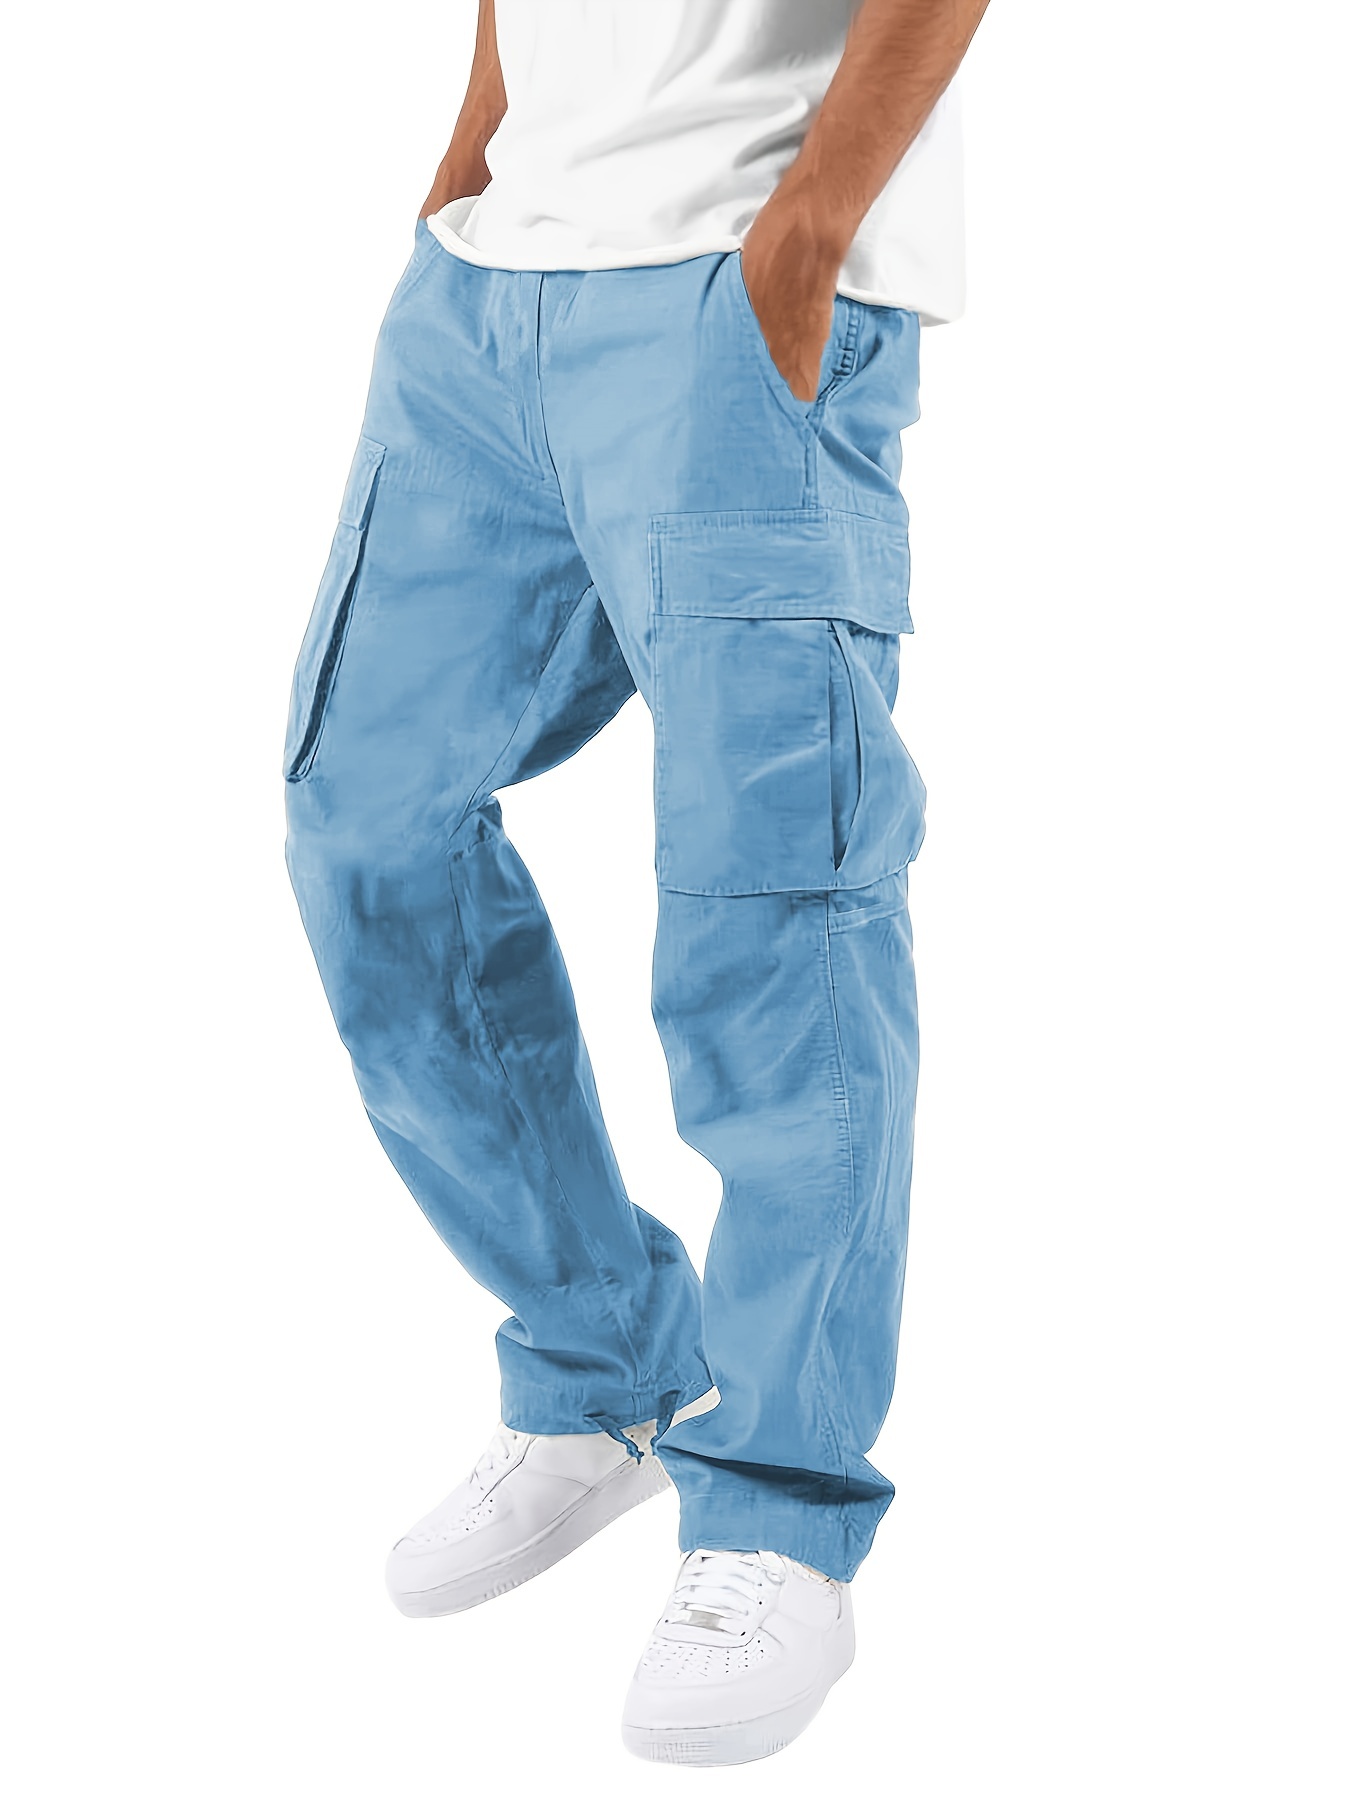 Pantalón chándal algodón hombre 💙 Blaugab